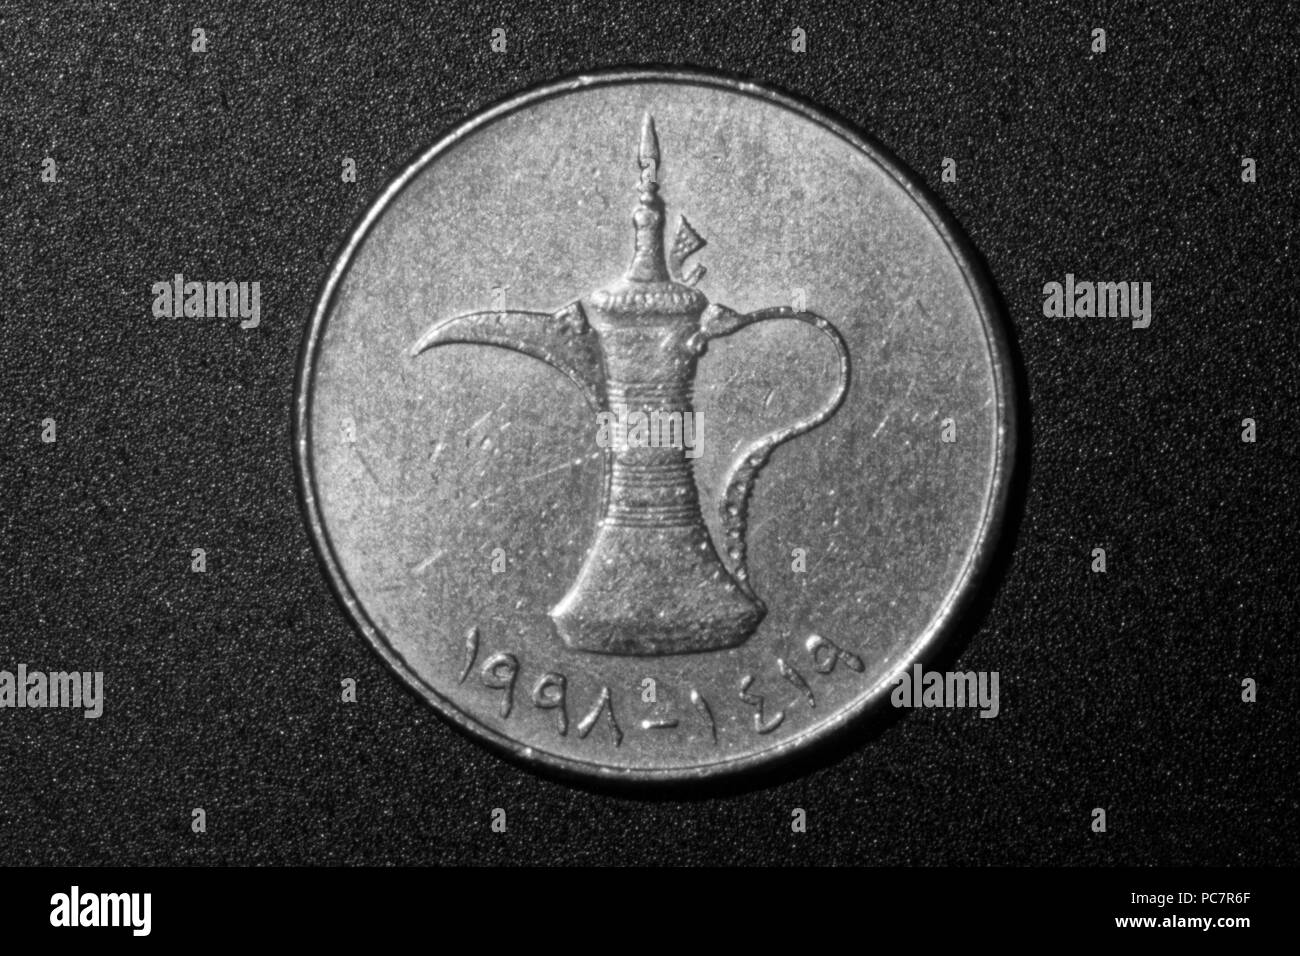 United Arab Emirates coin,one dirham Stock Photo